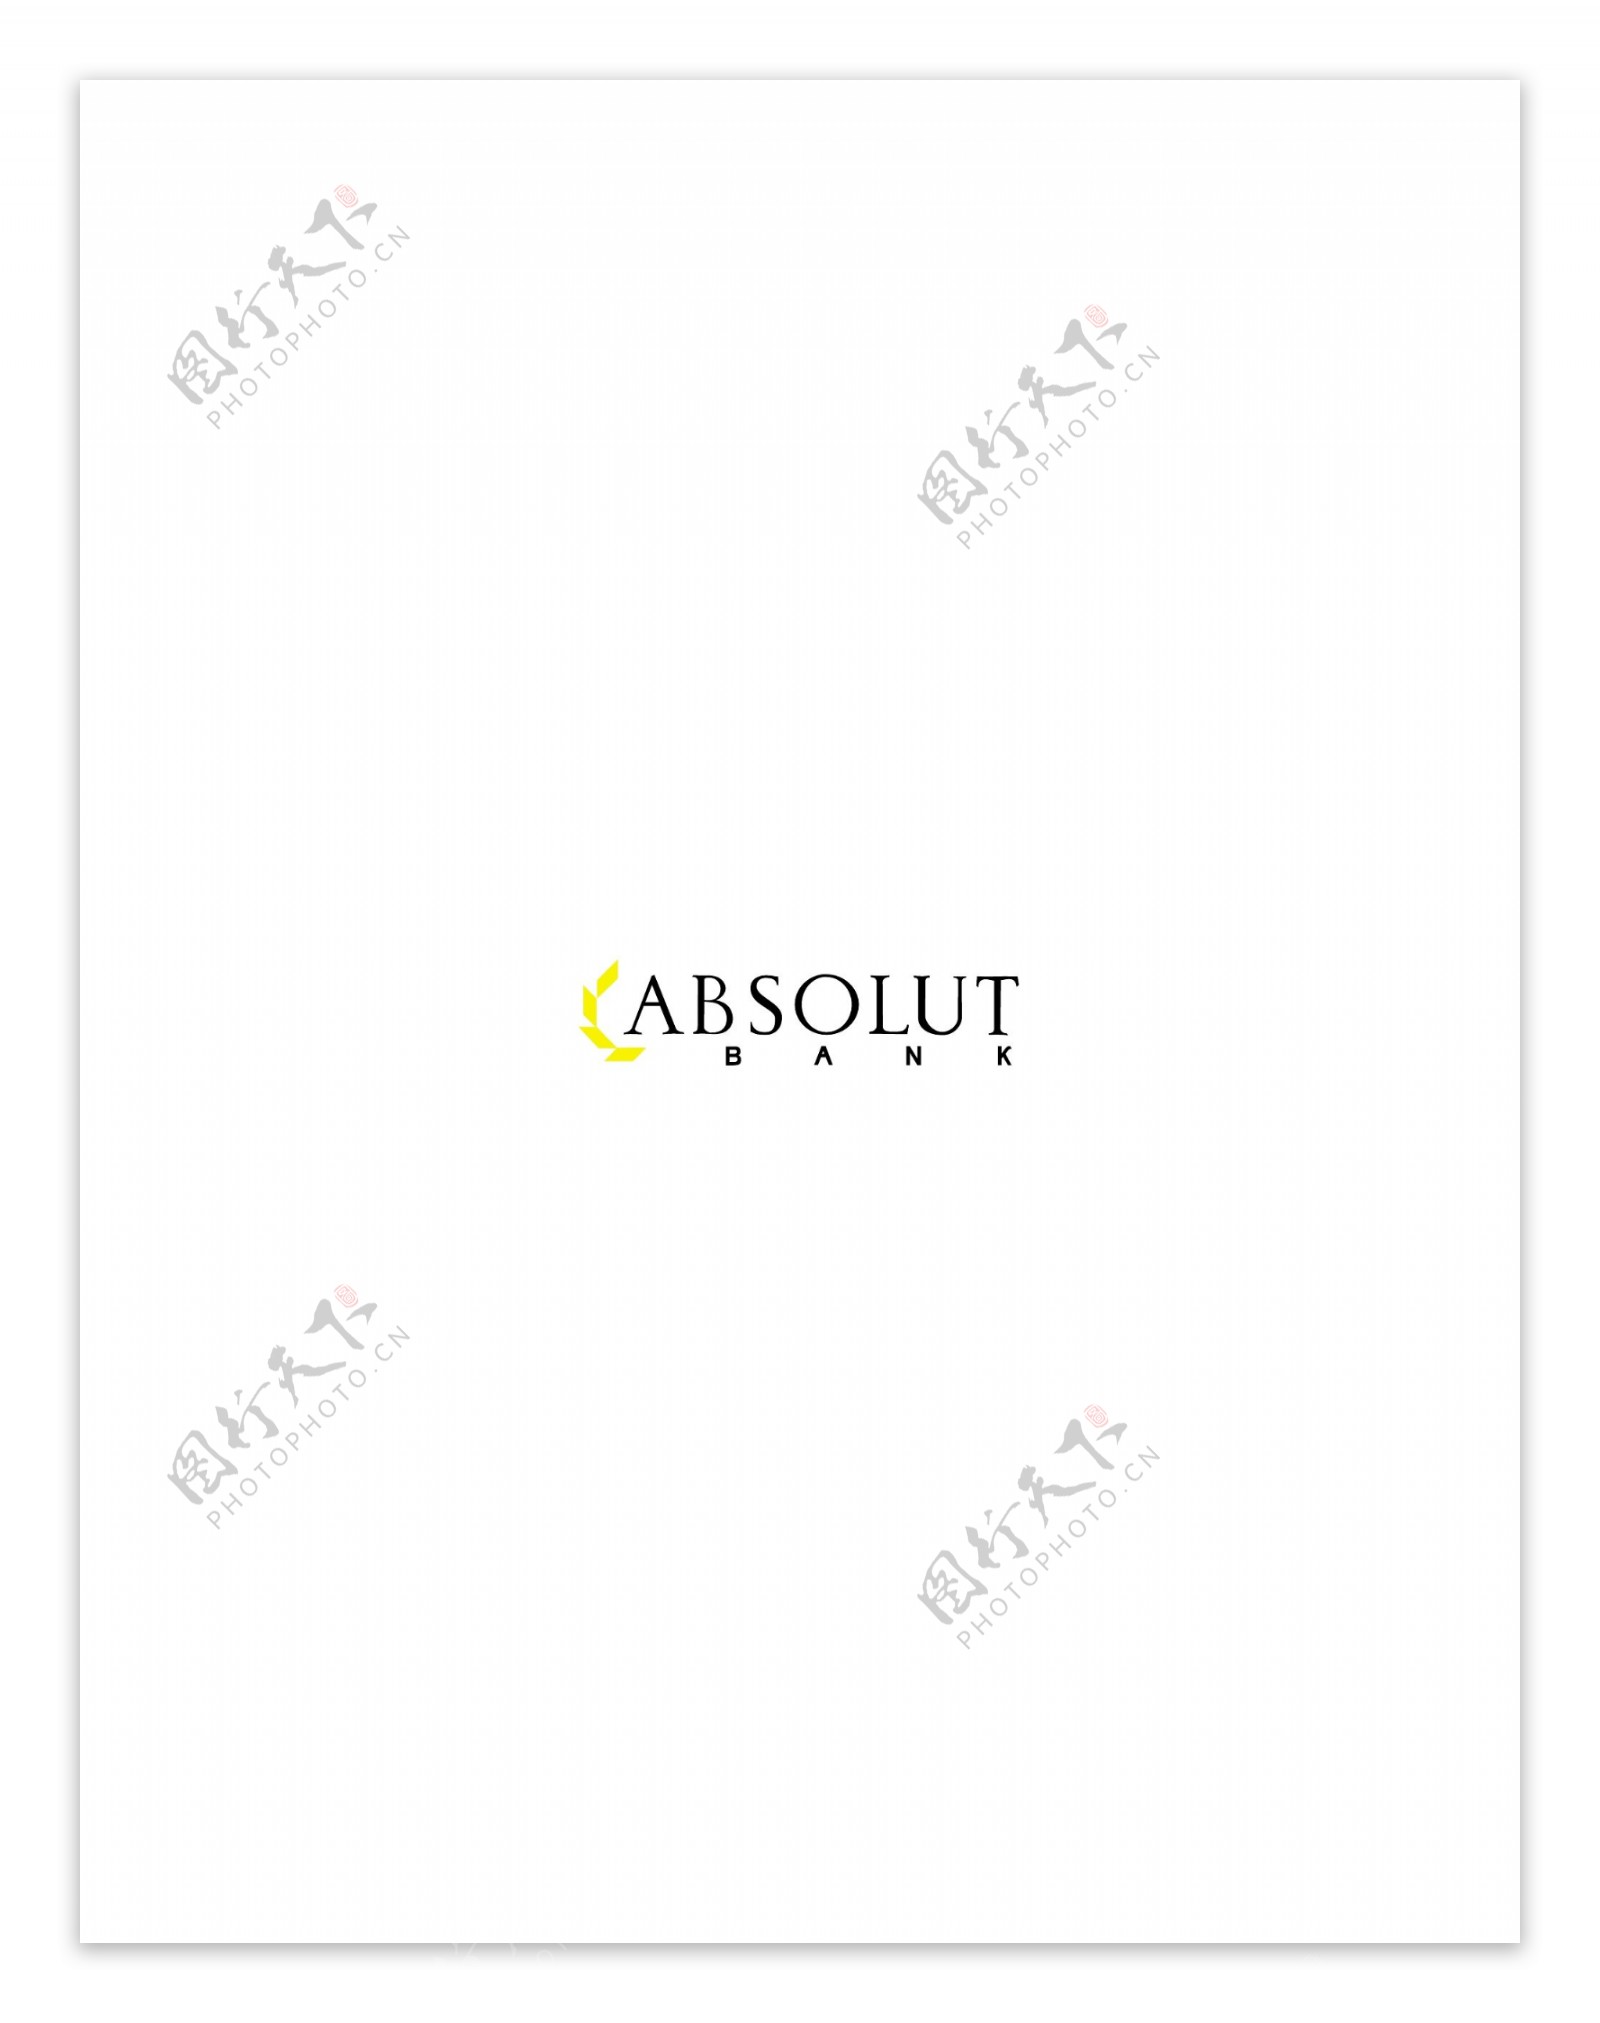 AbsolutBanklogo设计欣赏AbsolutBank国际银行标志下载标志设计欣赏